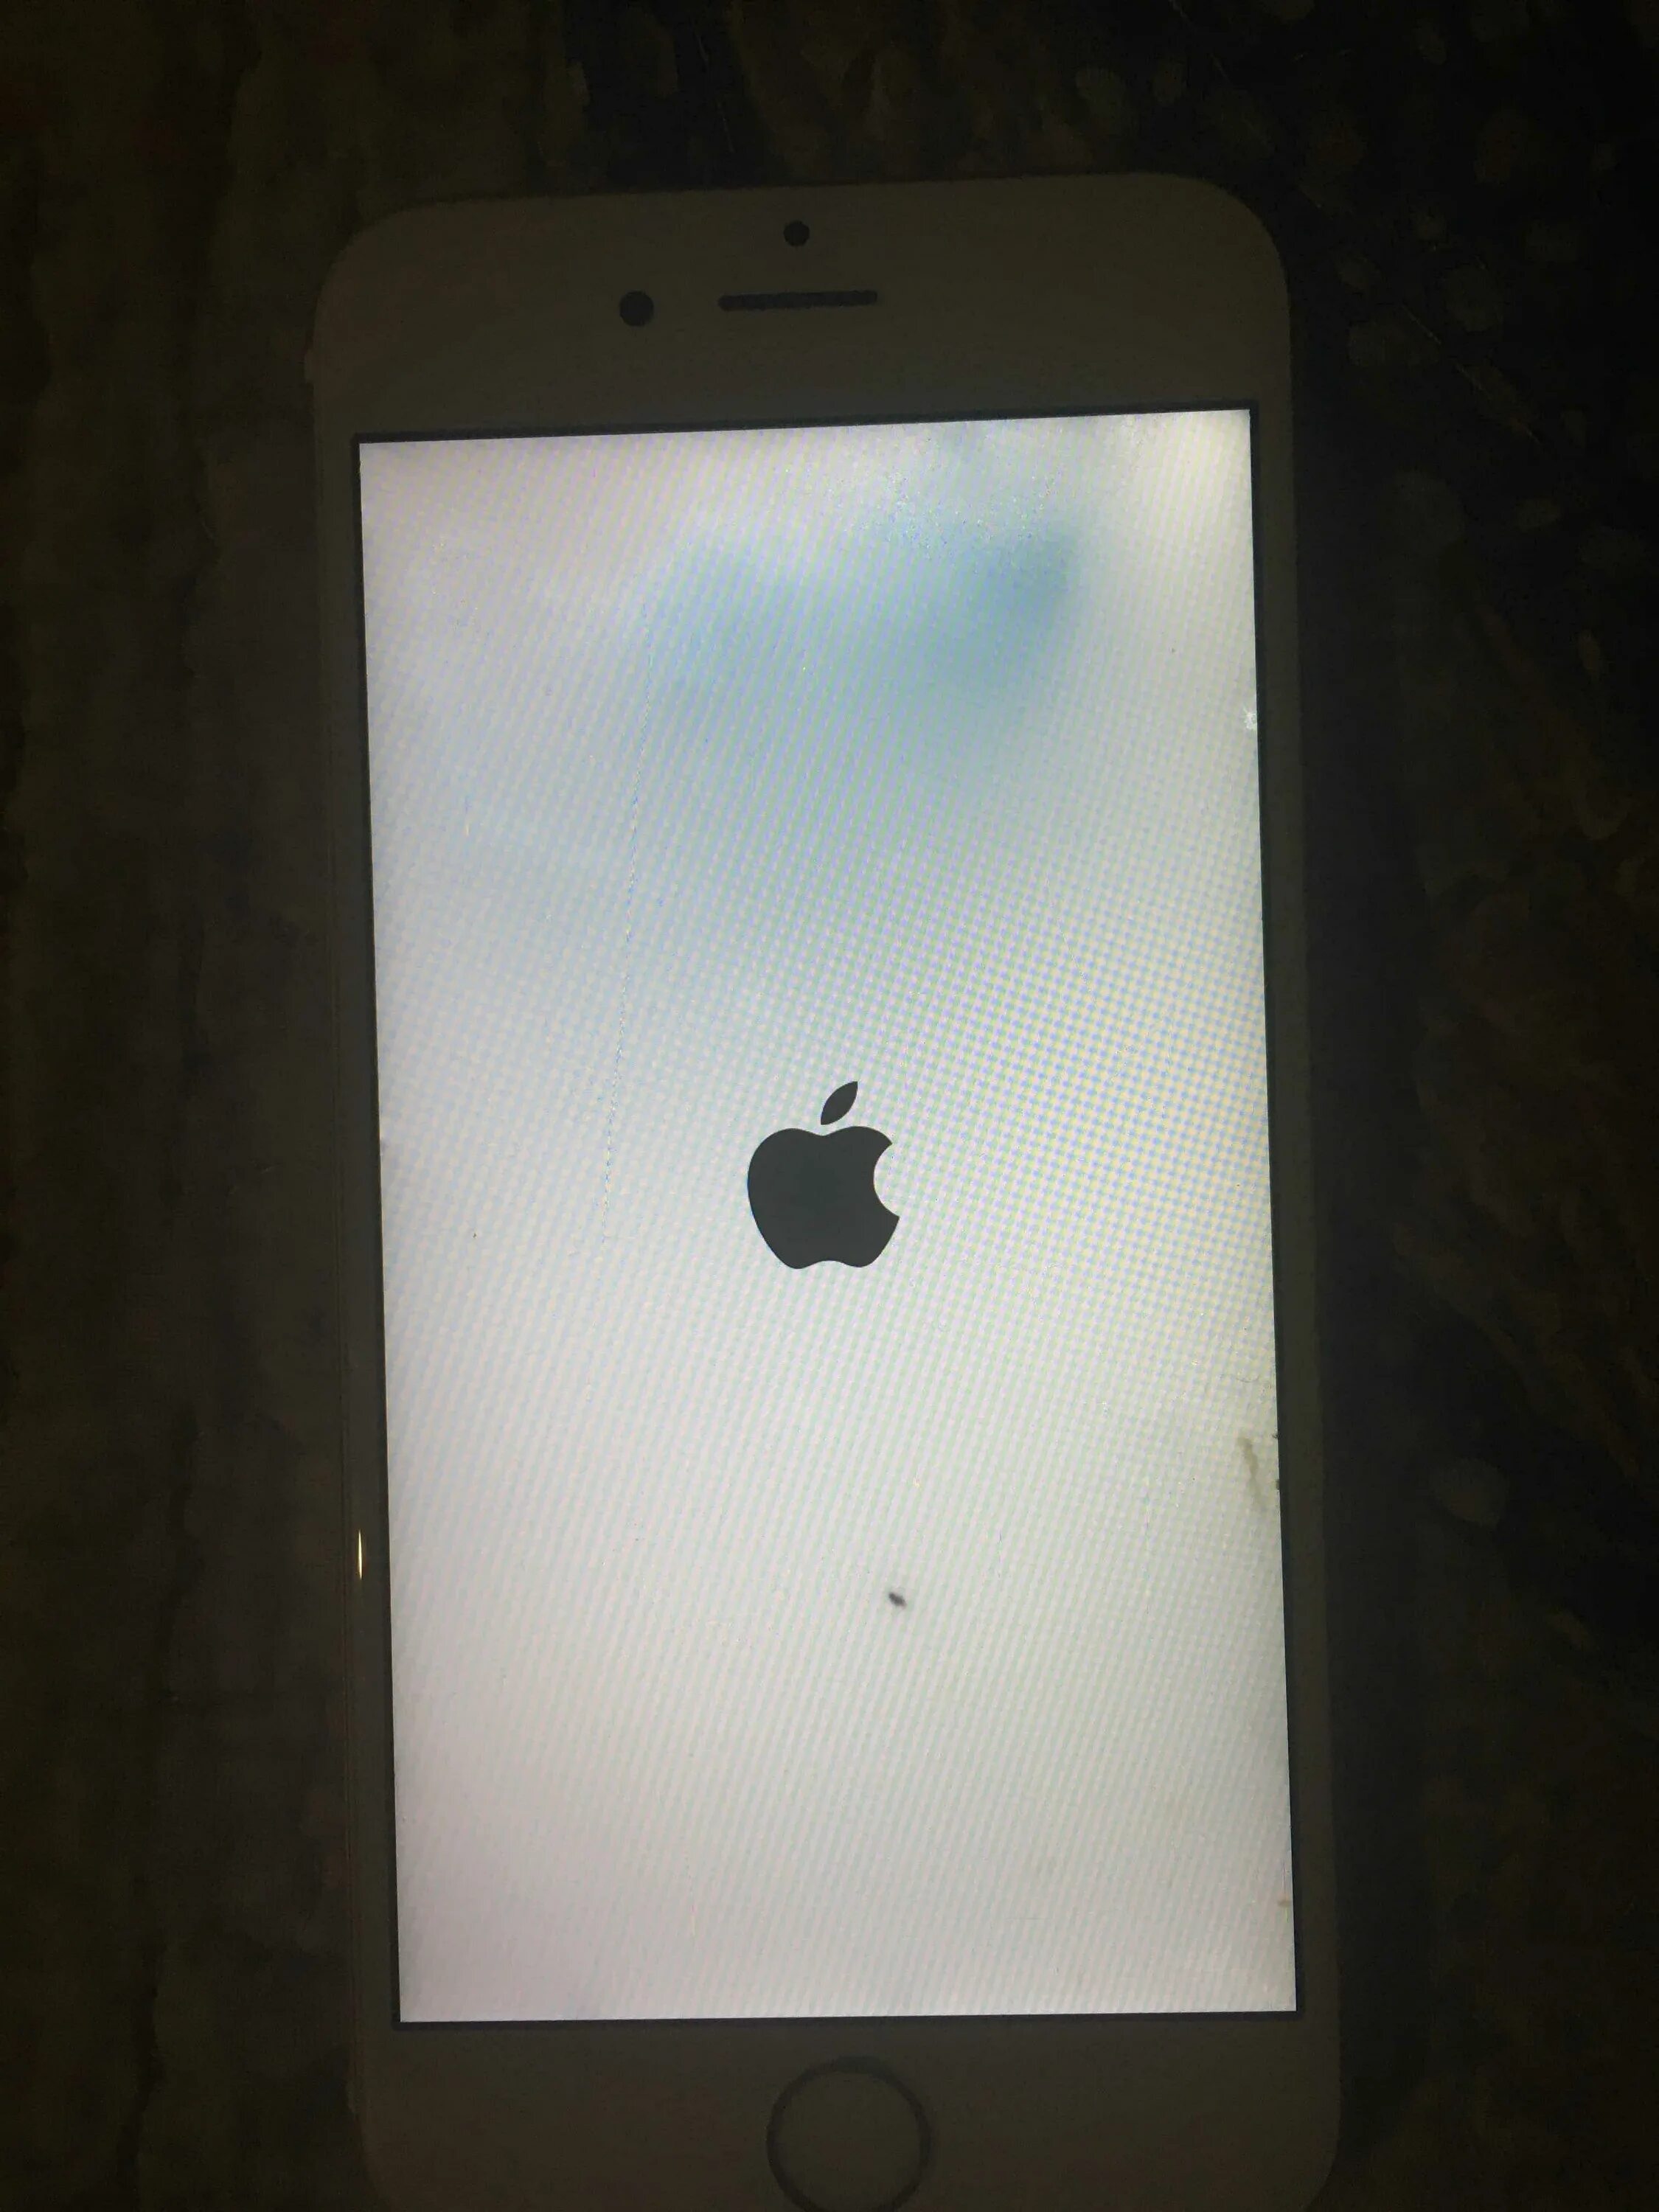 Включается iphone яблоко. Iphone загорелся. Айфон выключился горит яблоко. На iphone горит яблоко. Айфон 6 горит яблоко.